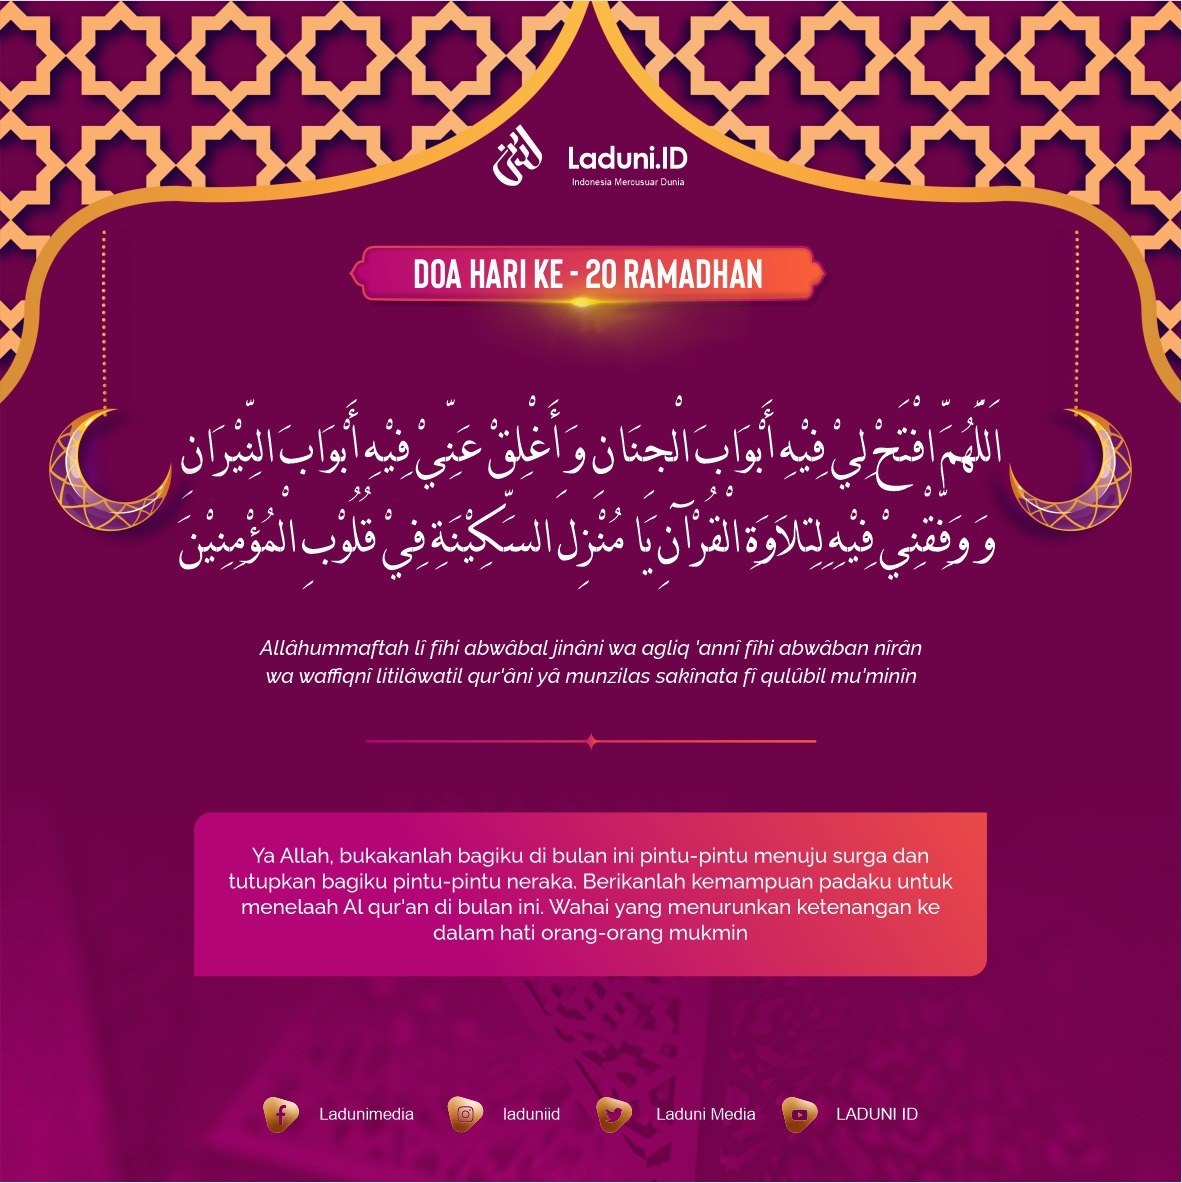 Doa Puasa Ramadhan Hari ke-20 dan Hikmahnya